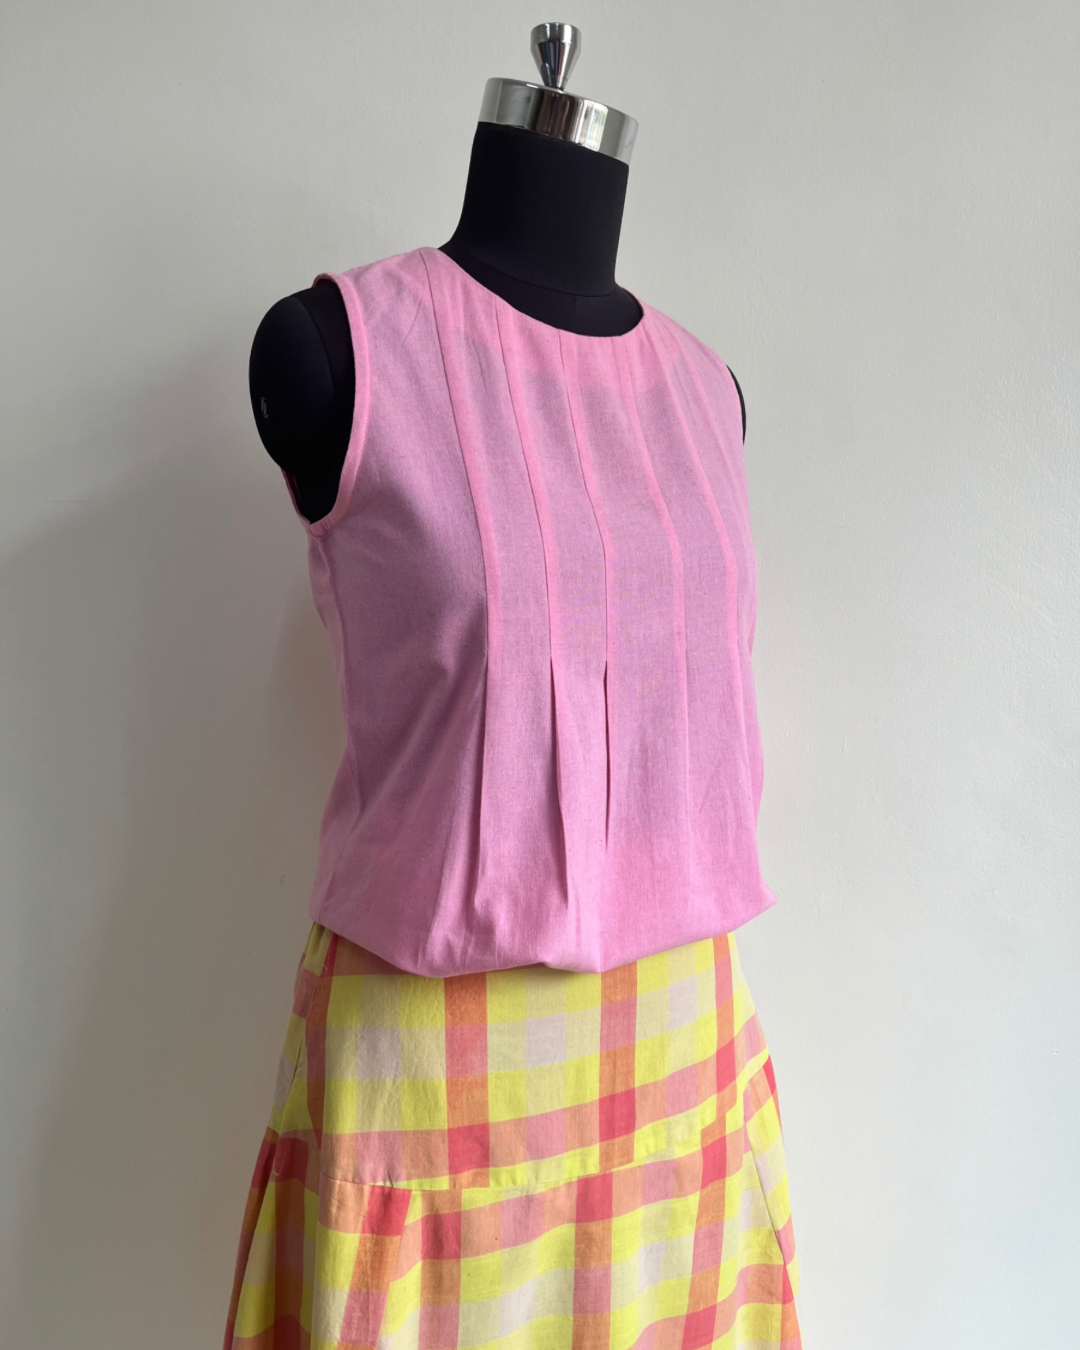 MoonBeam Skirt - Neon Yellow Pink Checks